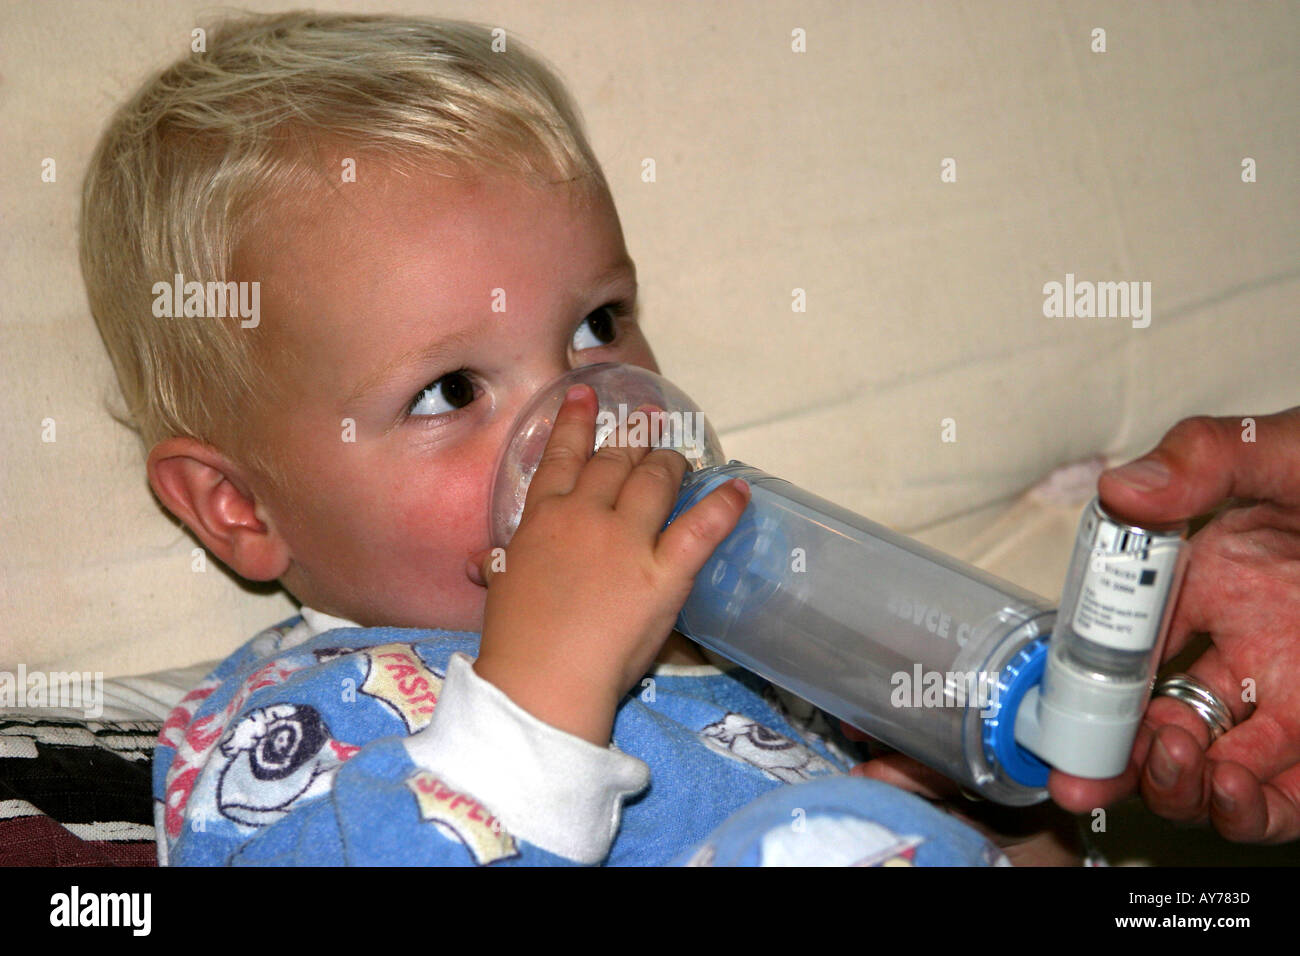 Petit garçon de prendre des médicaments pour des problèmes respiratoires allergies Asthme etc Banque D'Images